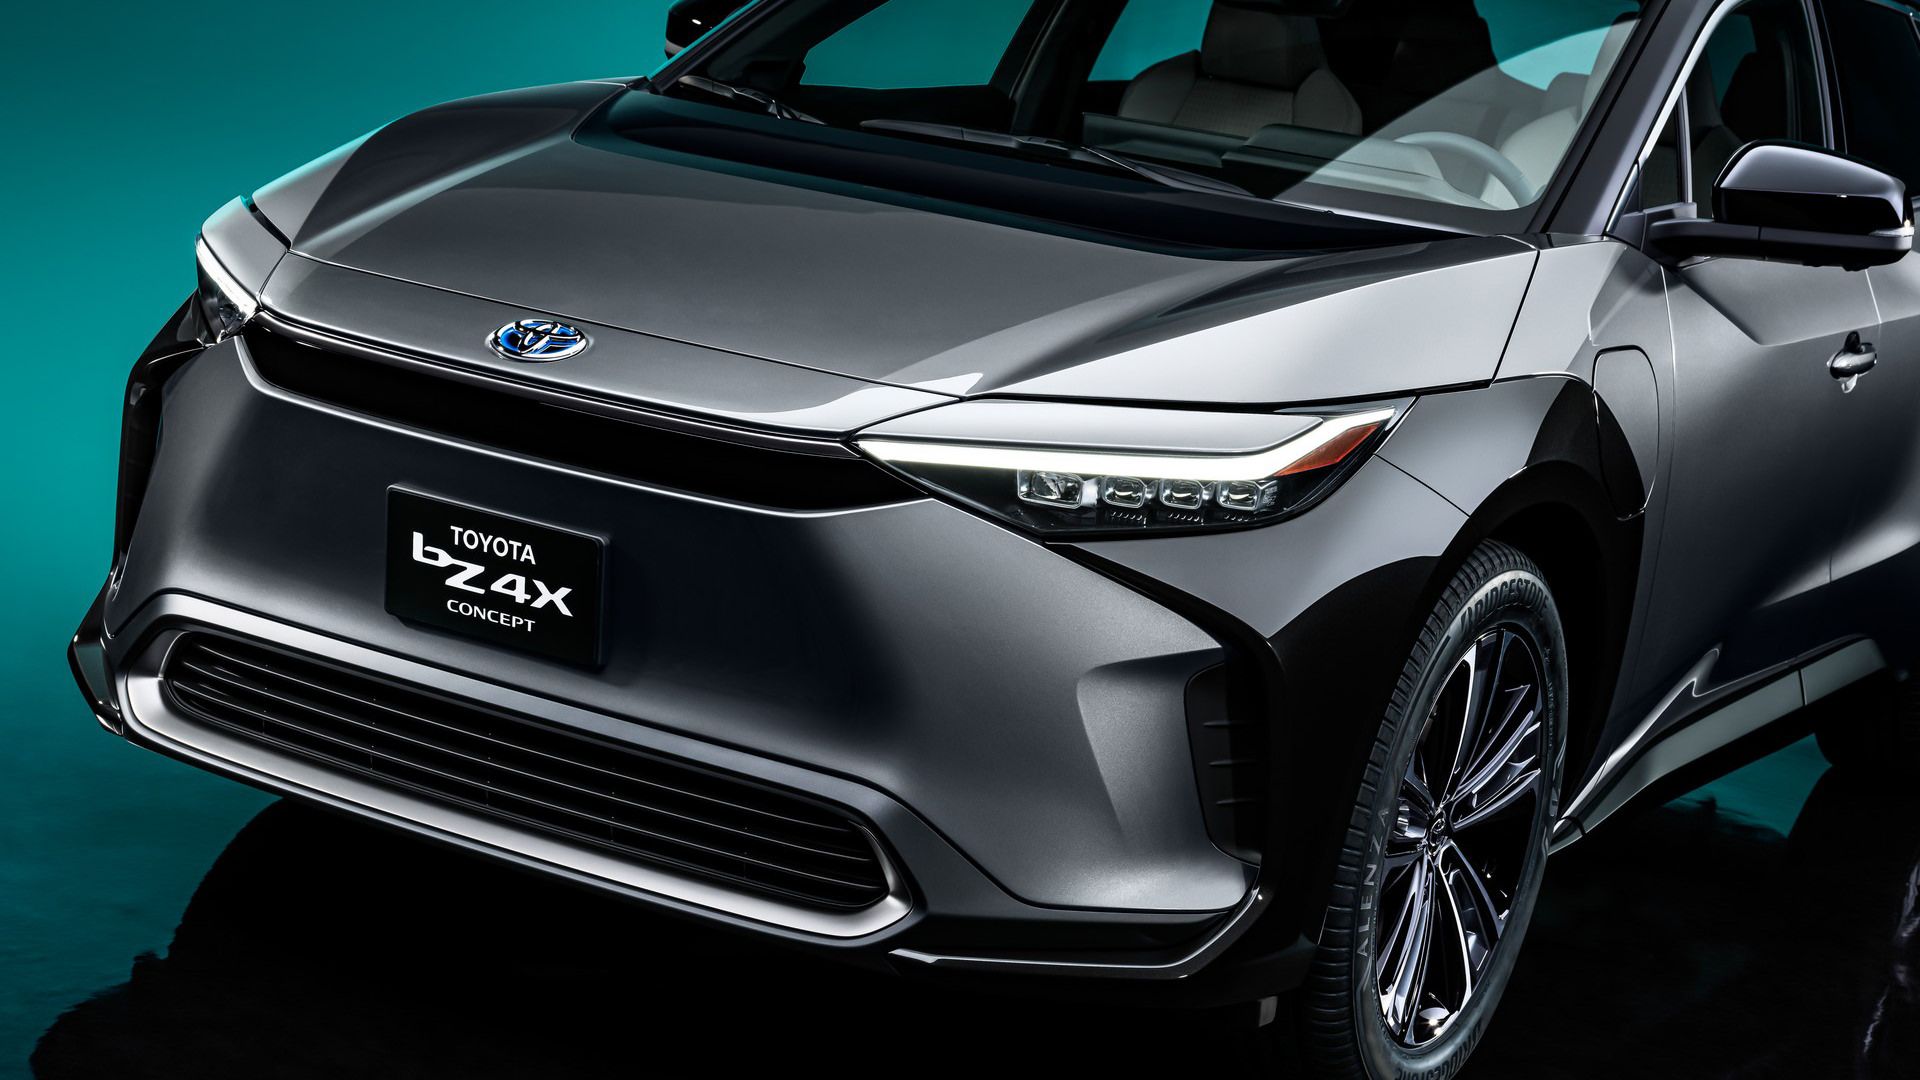 مرجع متخصصين ايران جلوپنجره كراس اور مفهومي تويوتا / Toyota bZ4X Concept